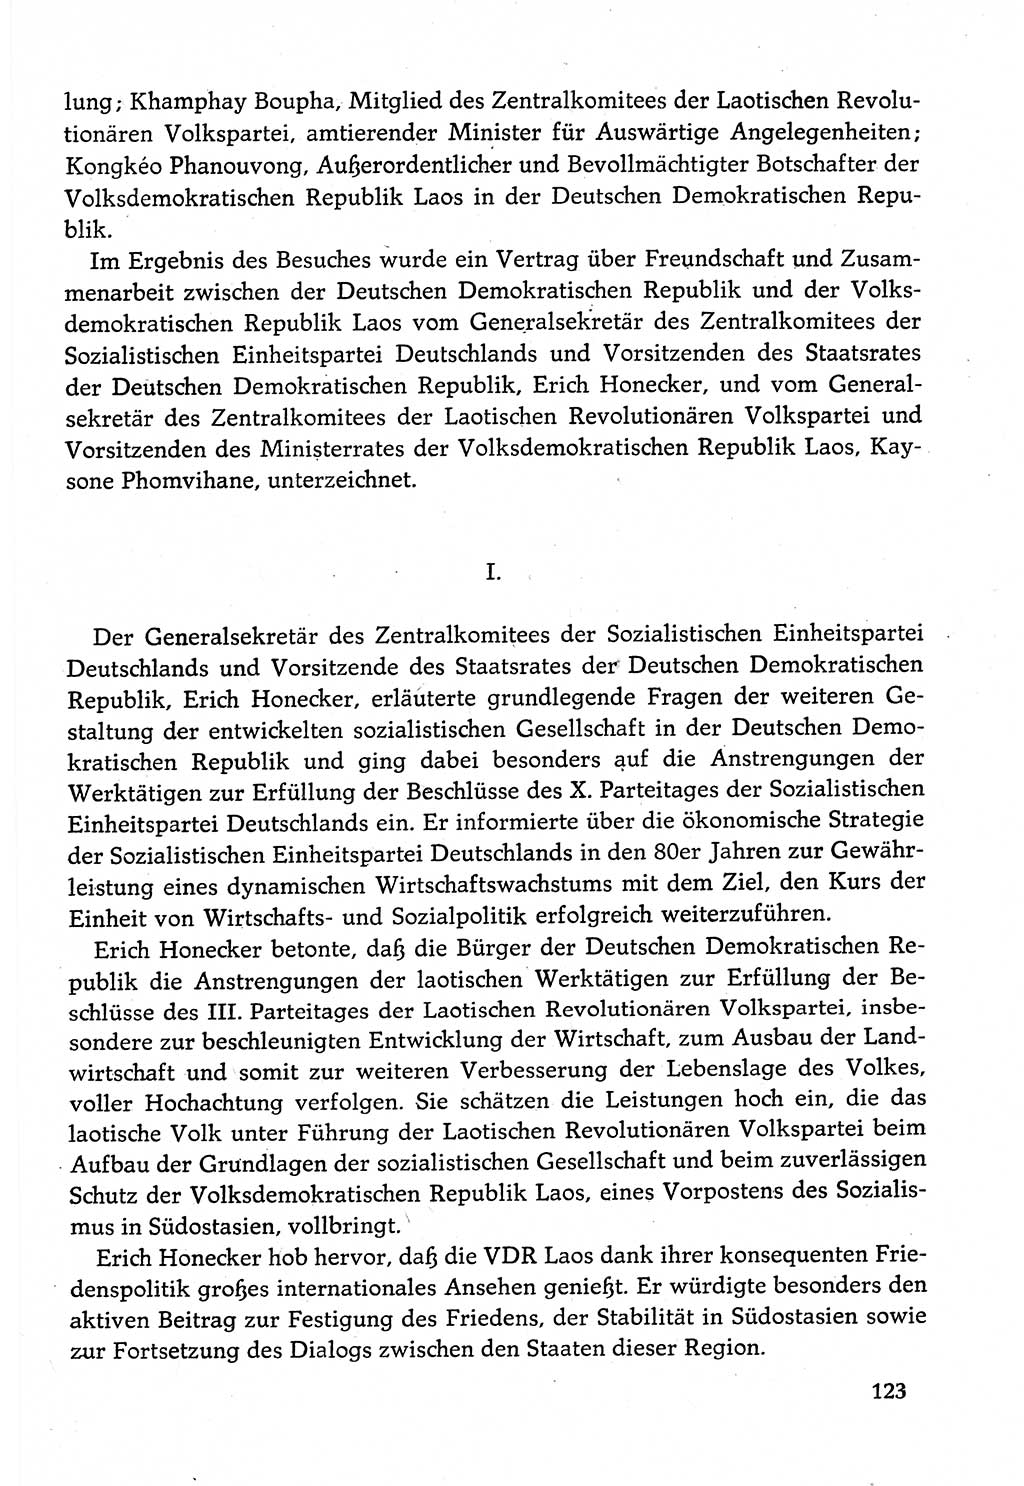 Dokumente der Sozialistischen Einheitspartei Deutschlands (SED) [Deutsche Demokratische Republik (DDR)] 1982-1983, Seite 123 (Dok. SED DDR 1982-1983, S. 123)